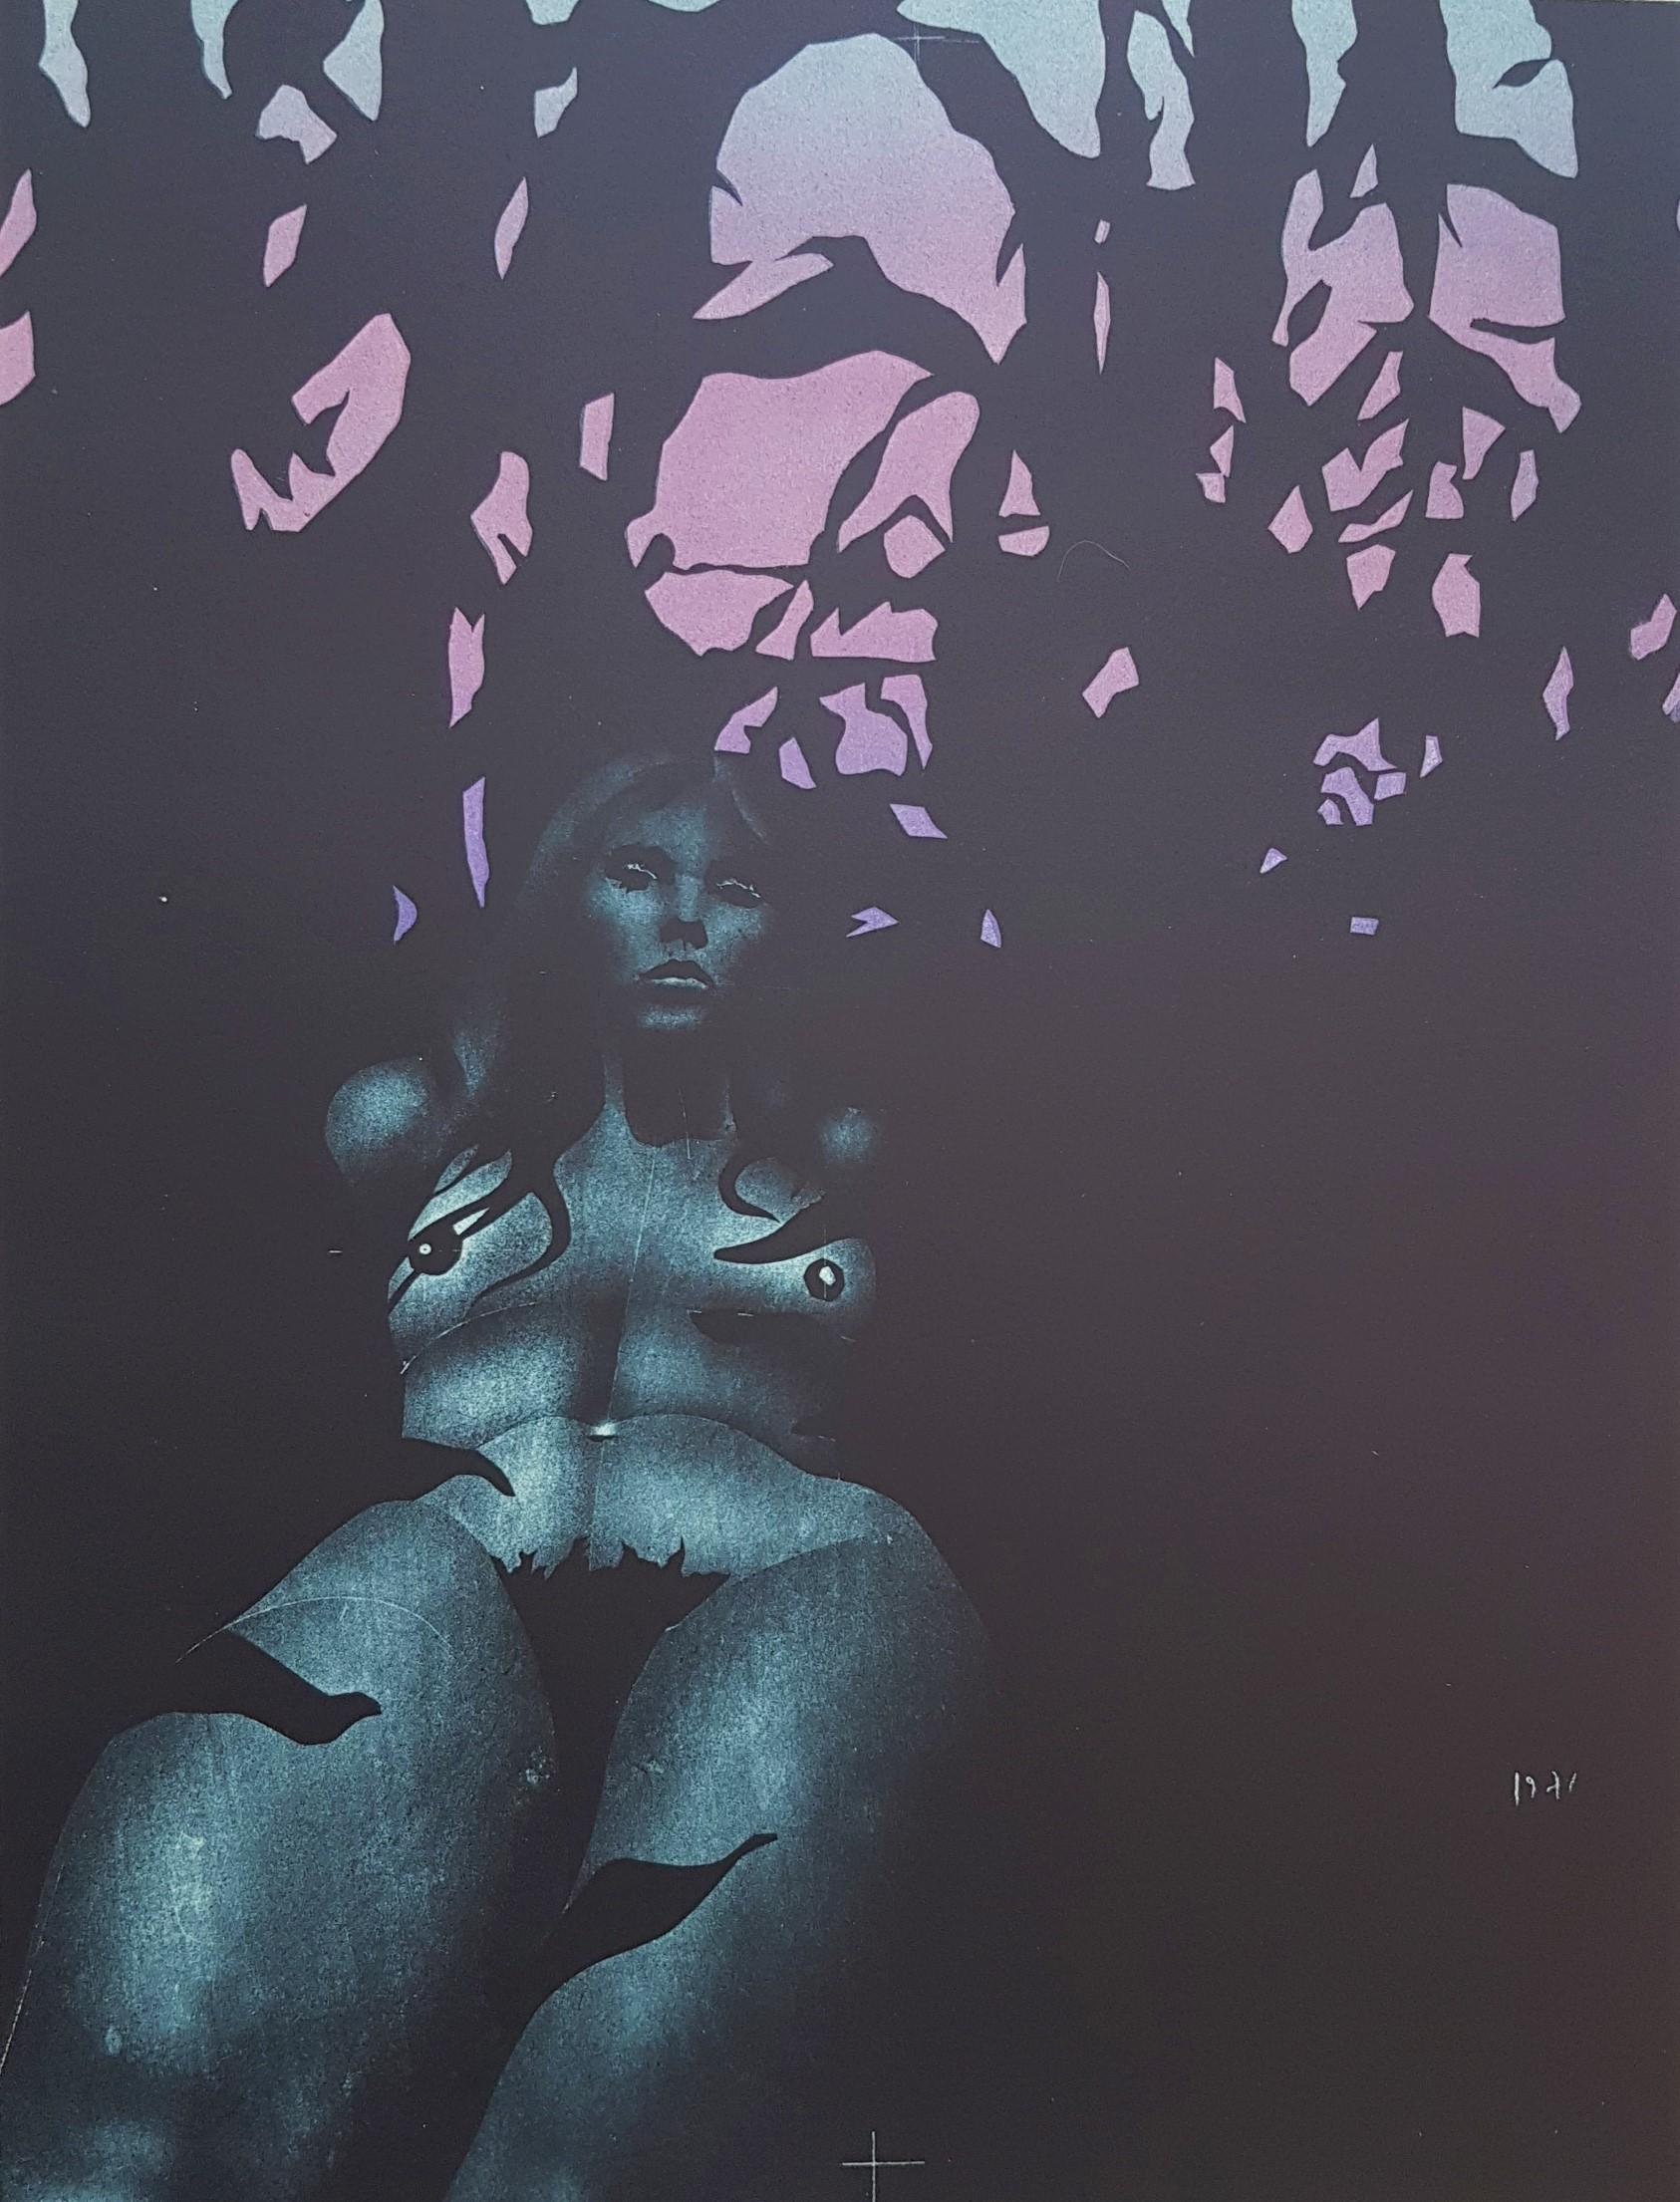 Paul Wunderlich Nude Print - From Portfolio "Twilight" with Karin Szekessy